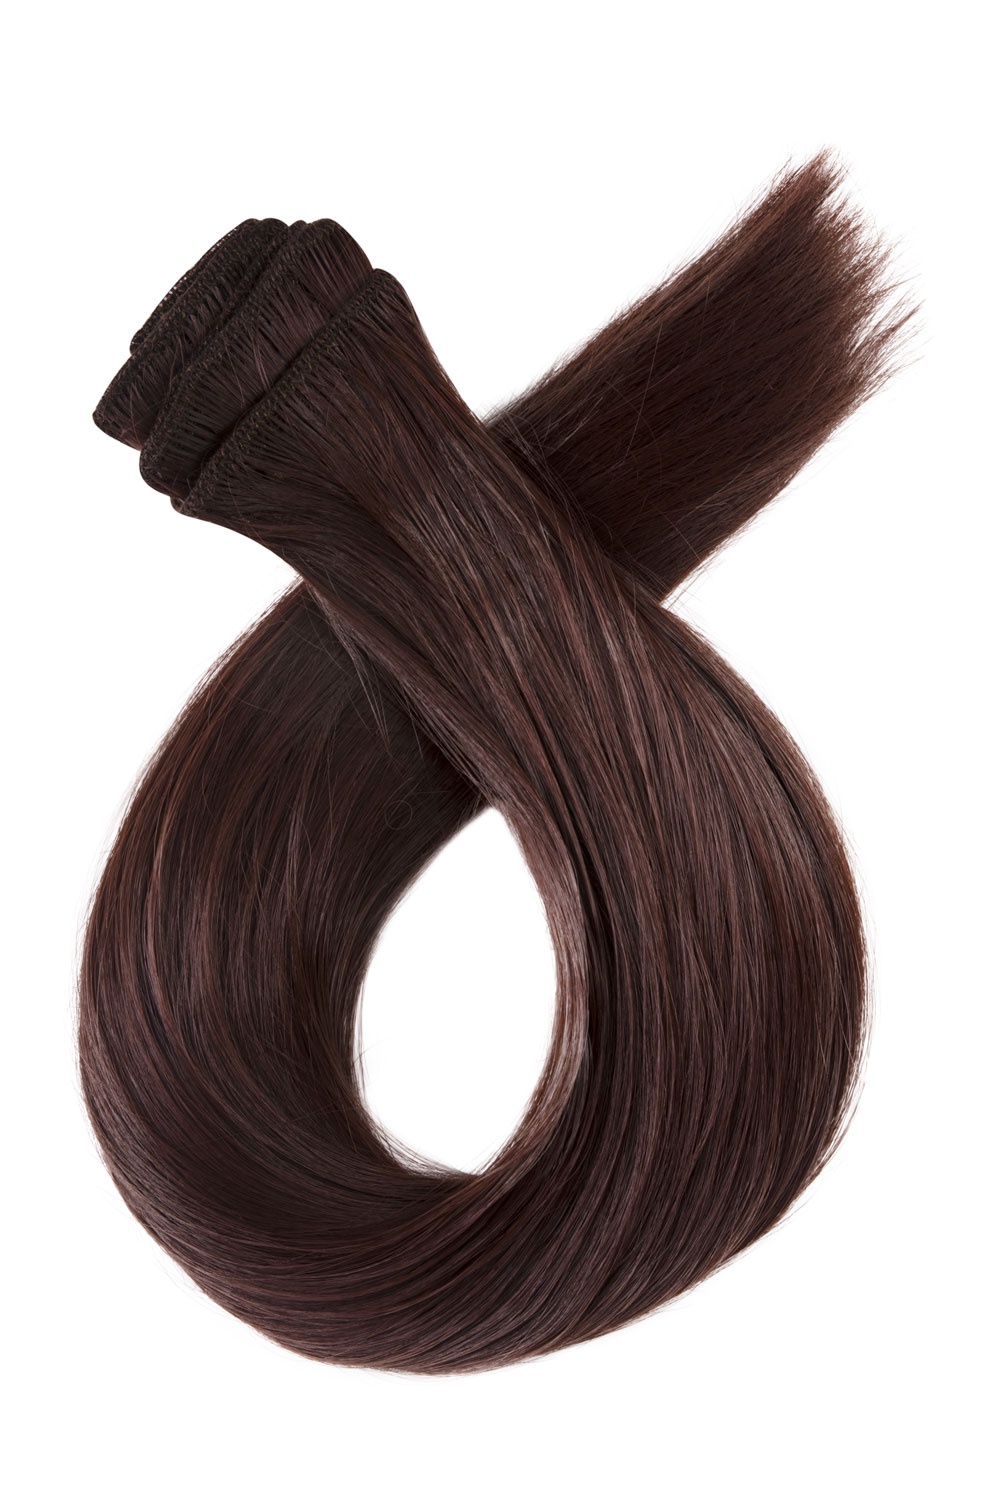 Tmavé červenohnedé clip in vlasy, 50cm, 115g, farba 33